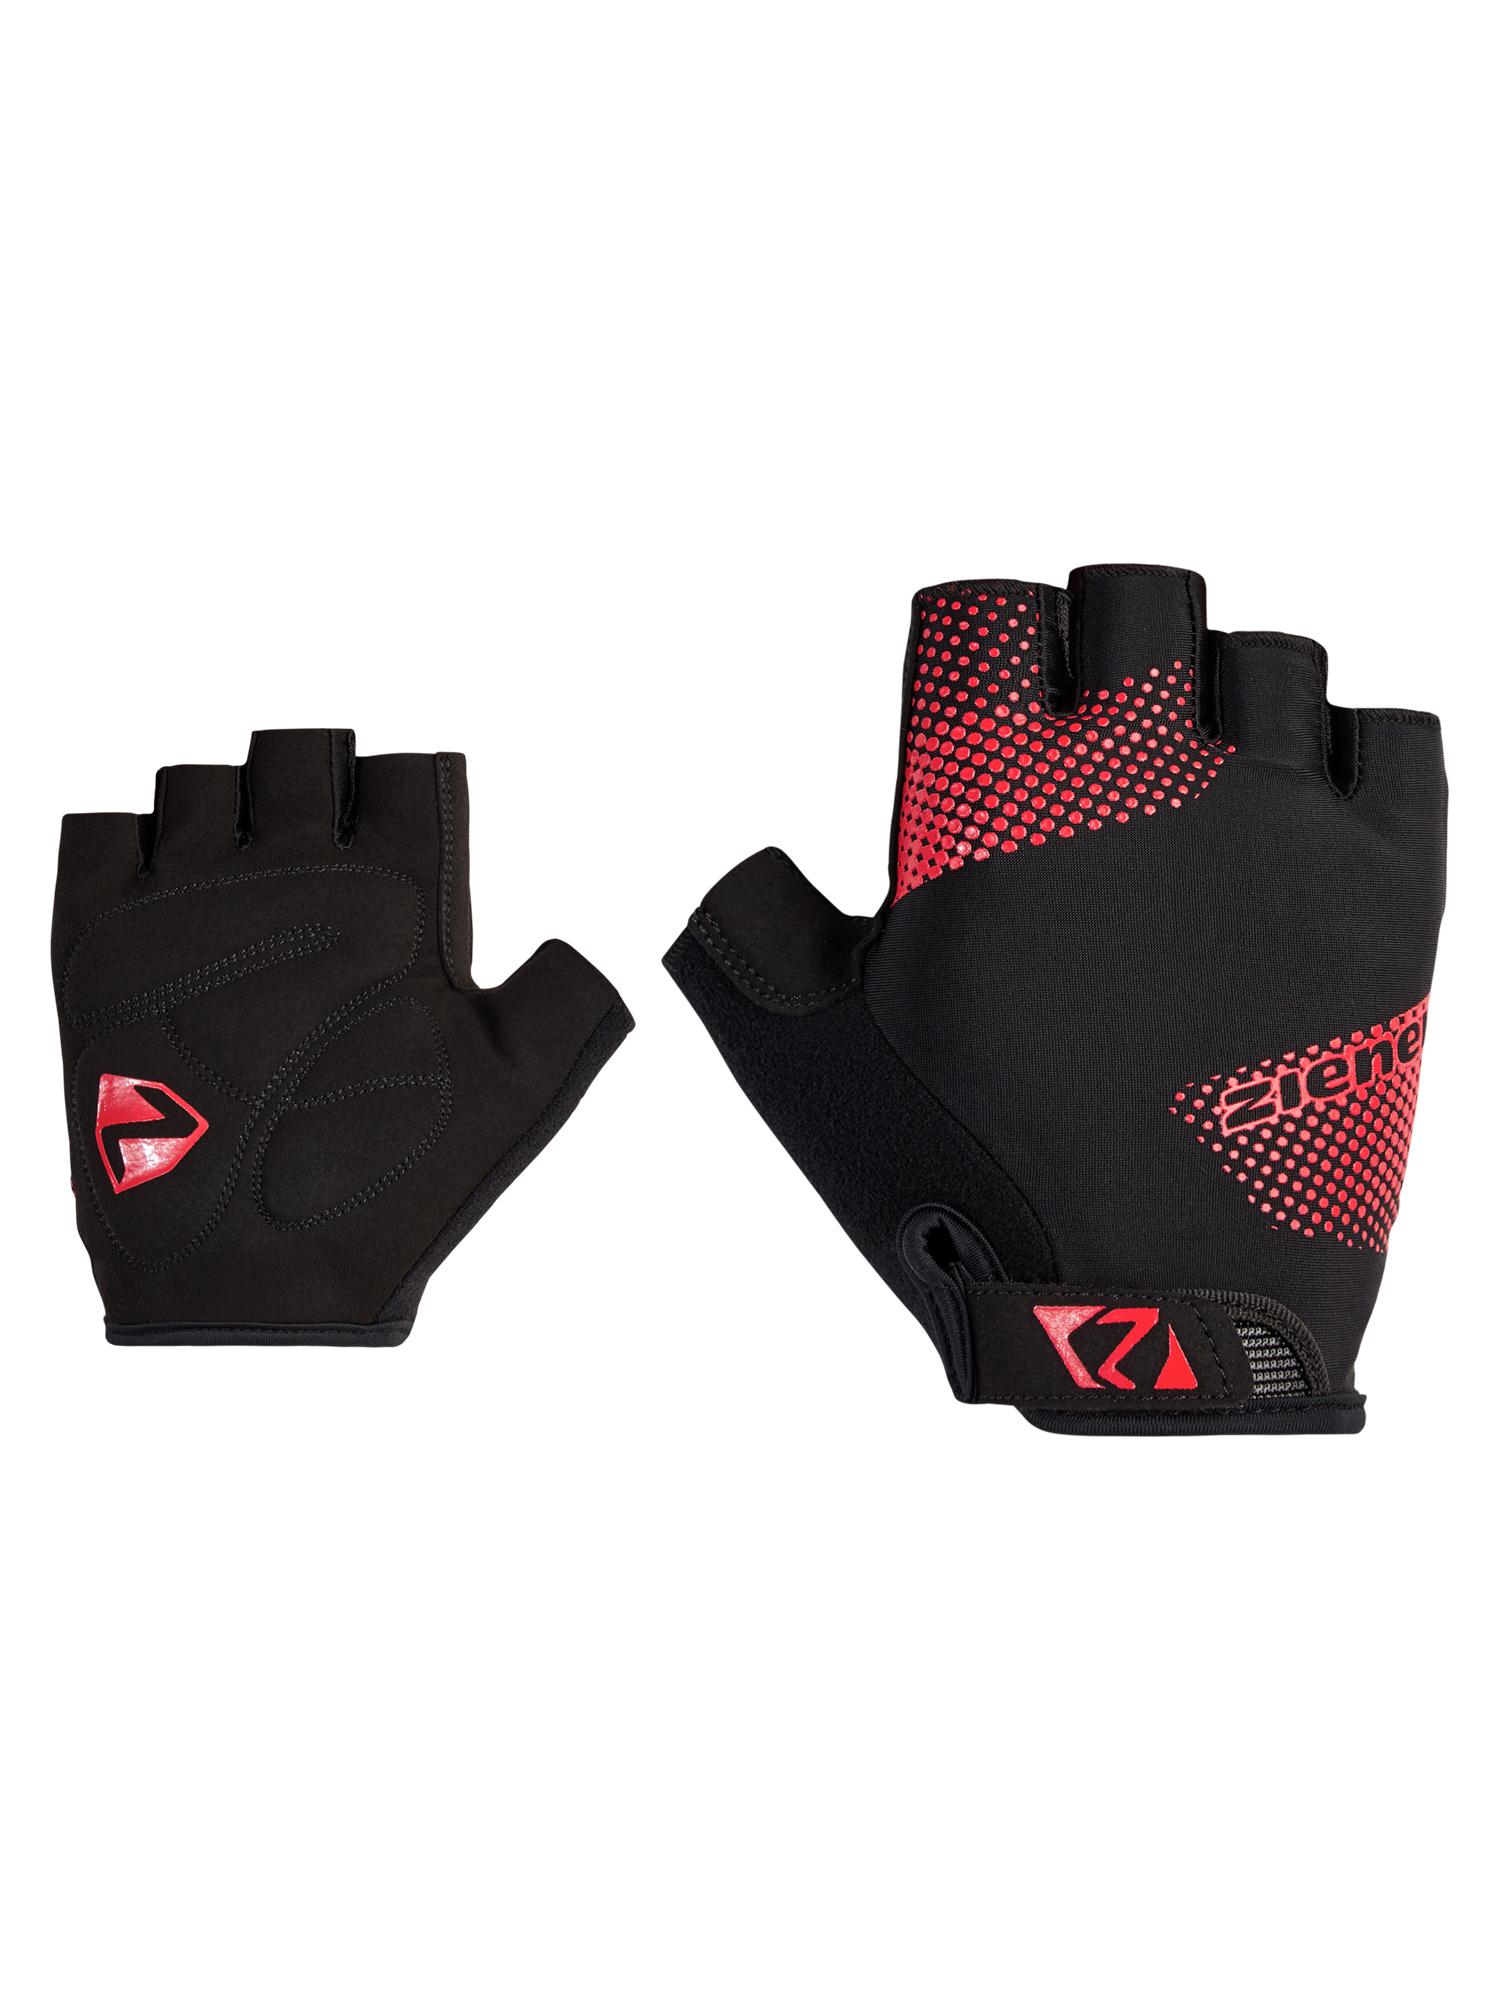 Fingerlose Handschuhe » Fingerlose Ziener in kaufen Online im von SportScheck von Shop Handschuhe rot